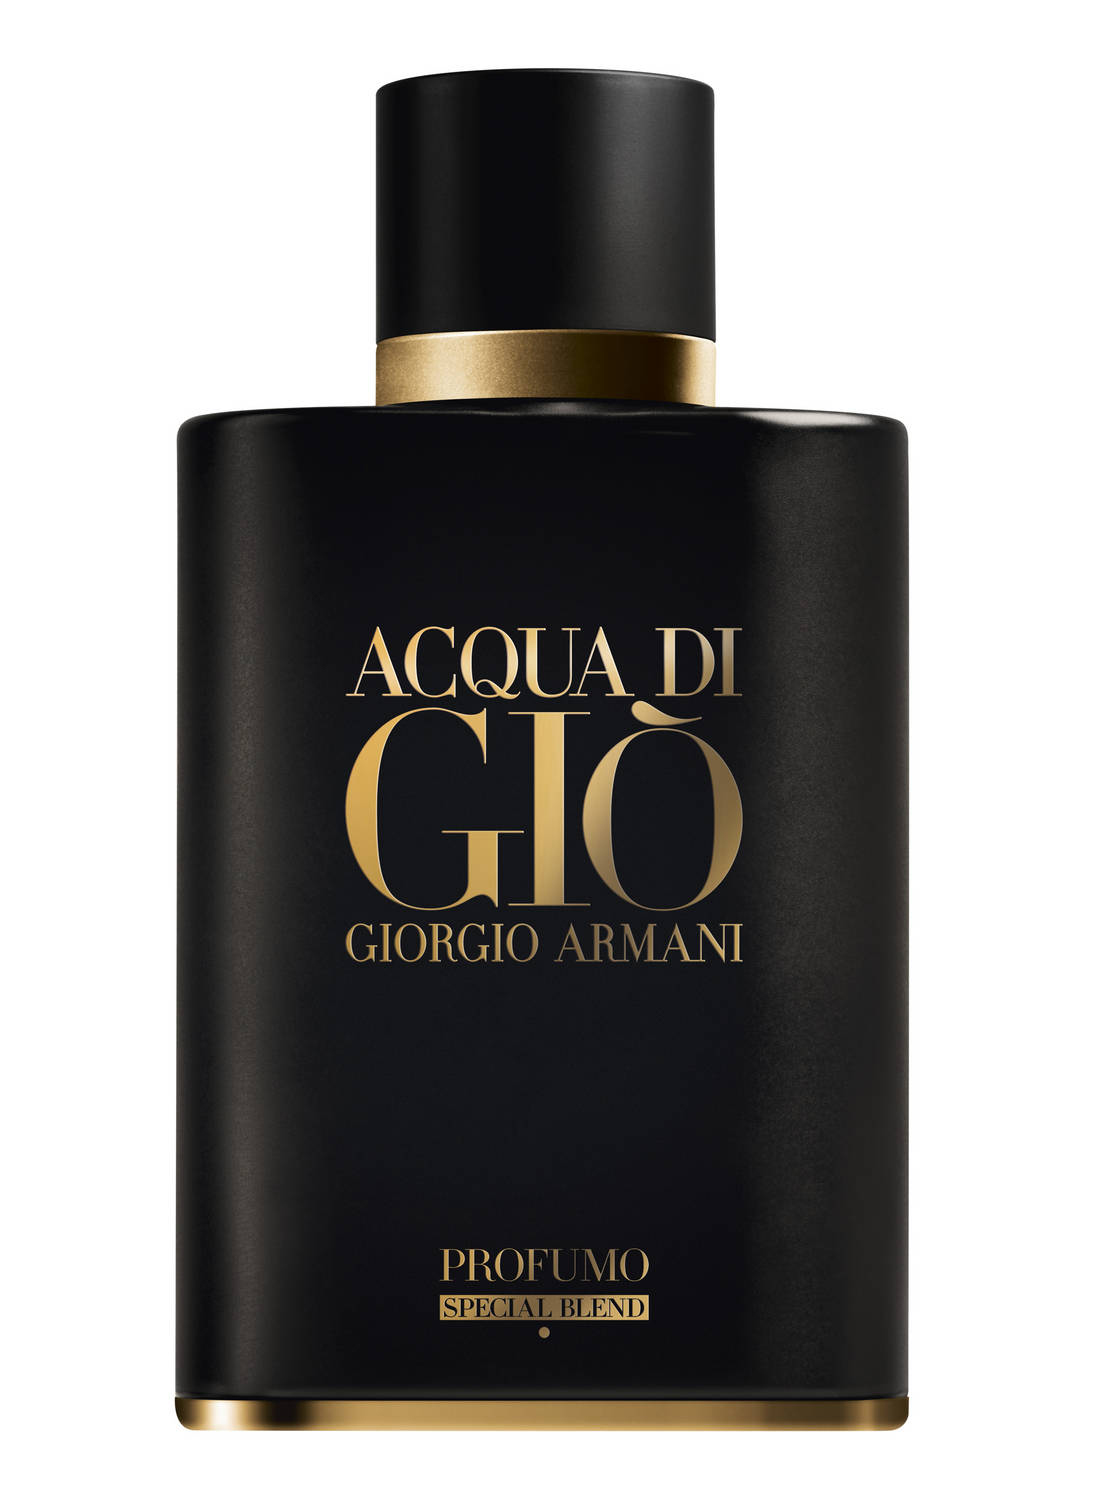 Acqua Di Gio Parfum Homecare24